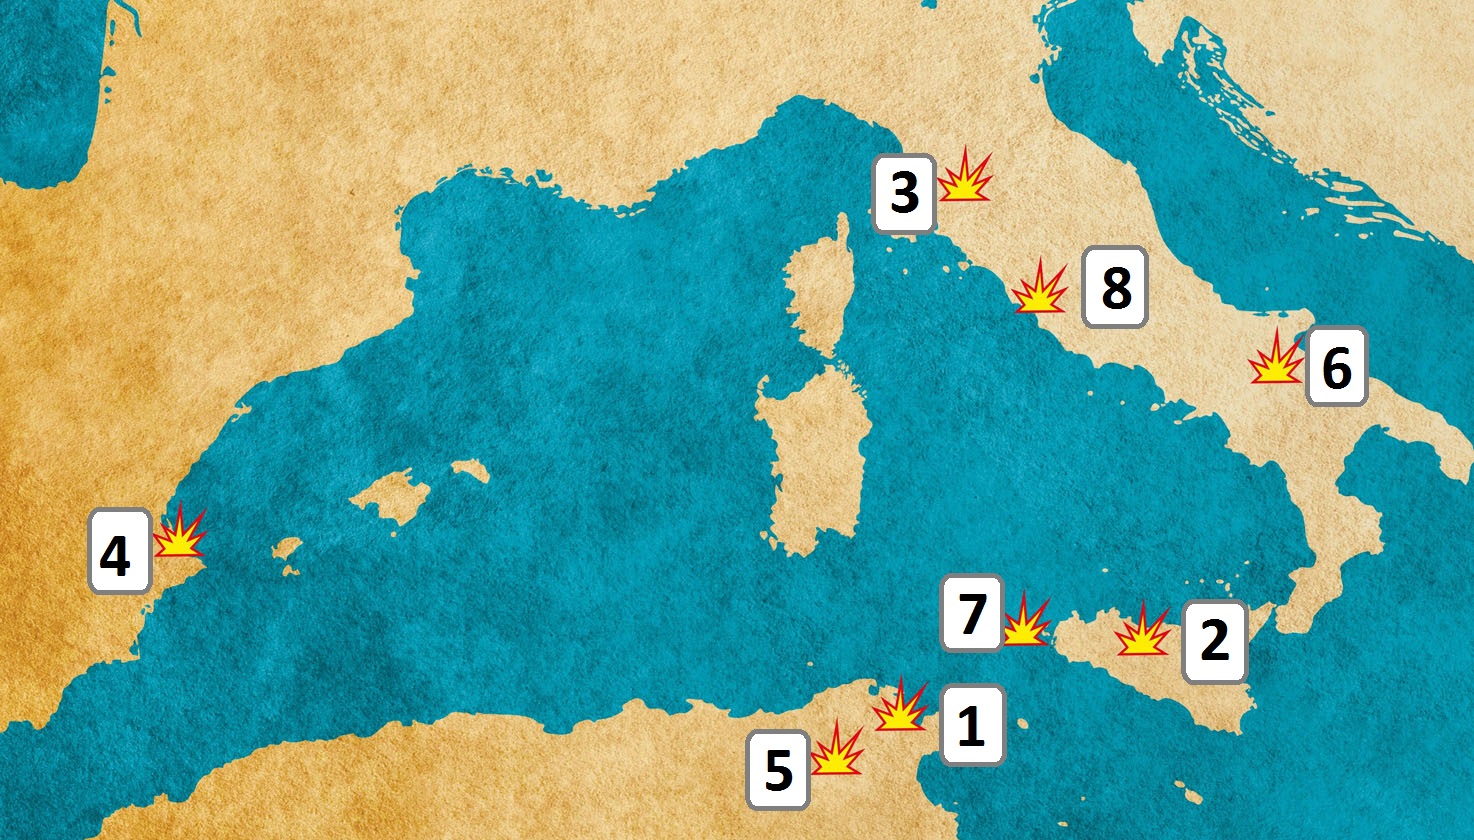 Ova slika prikazuje kartu zapadnoga Sredozemlja.